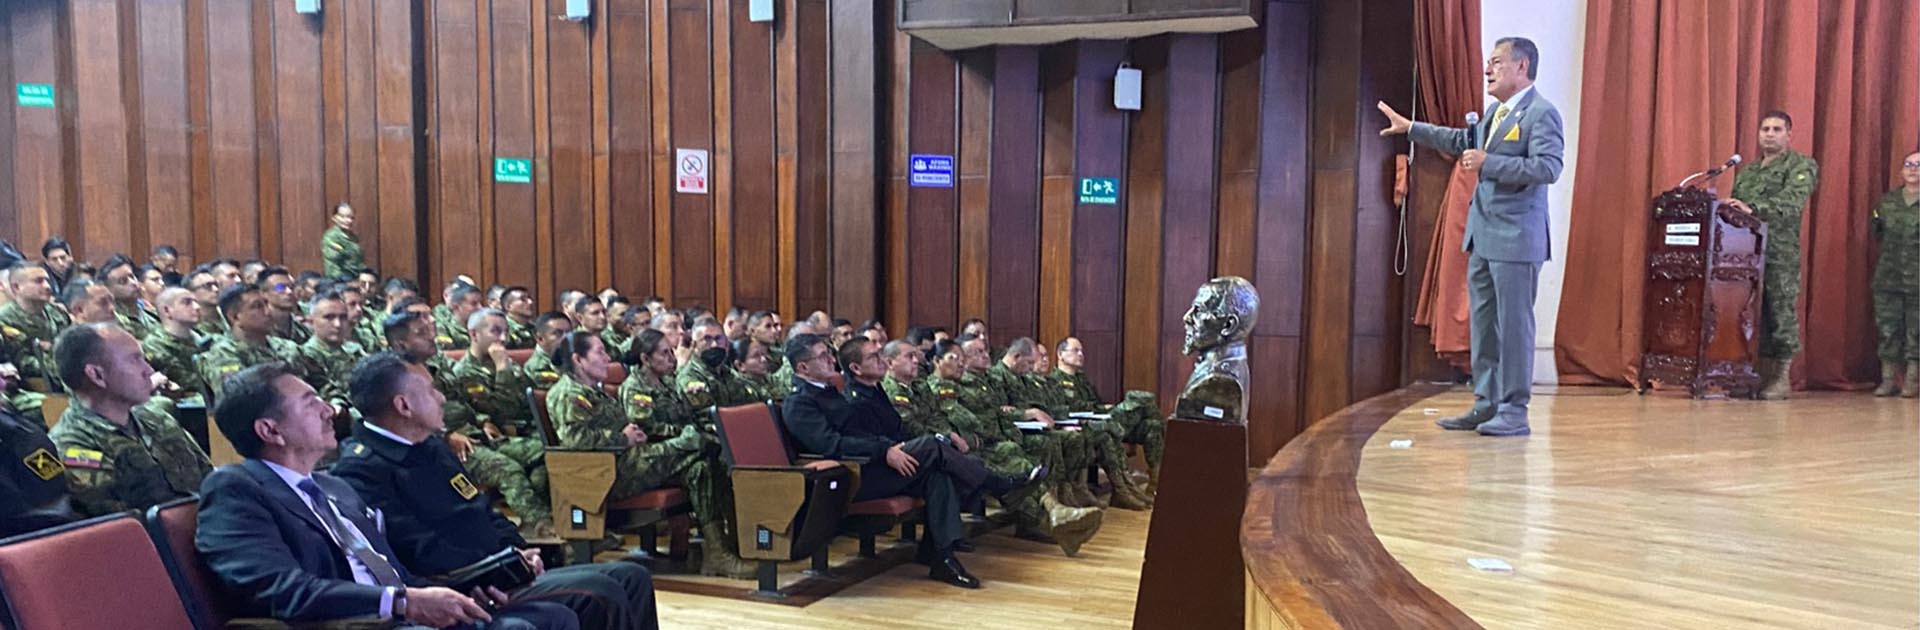 Ecuador Army War Academy Seminar